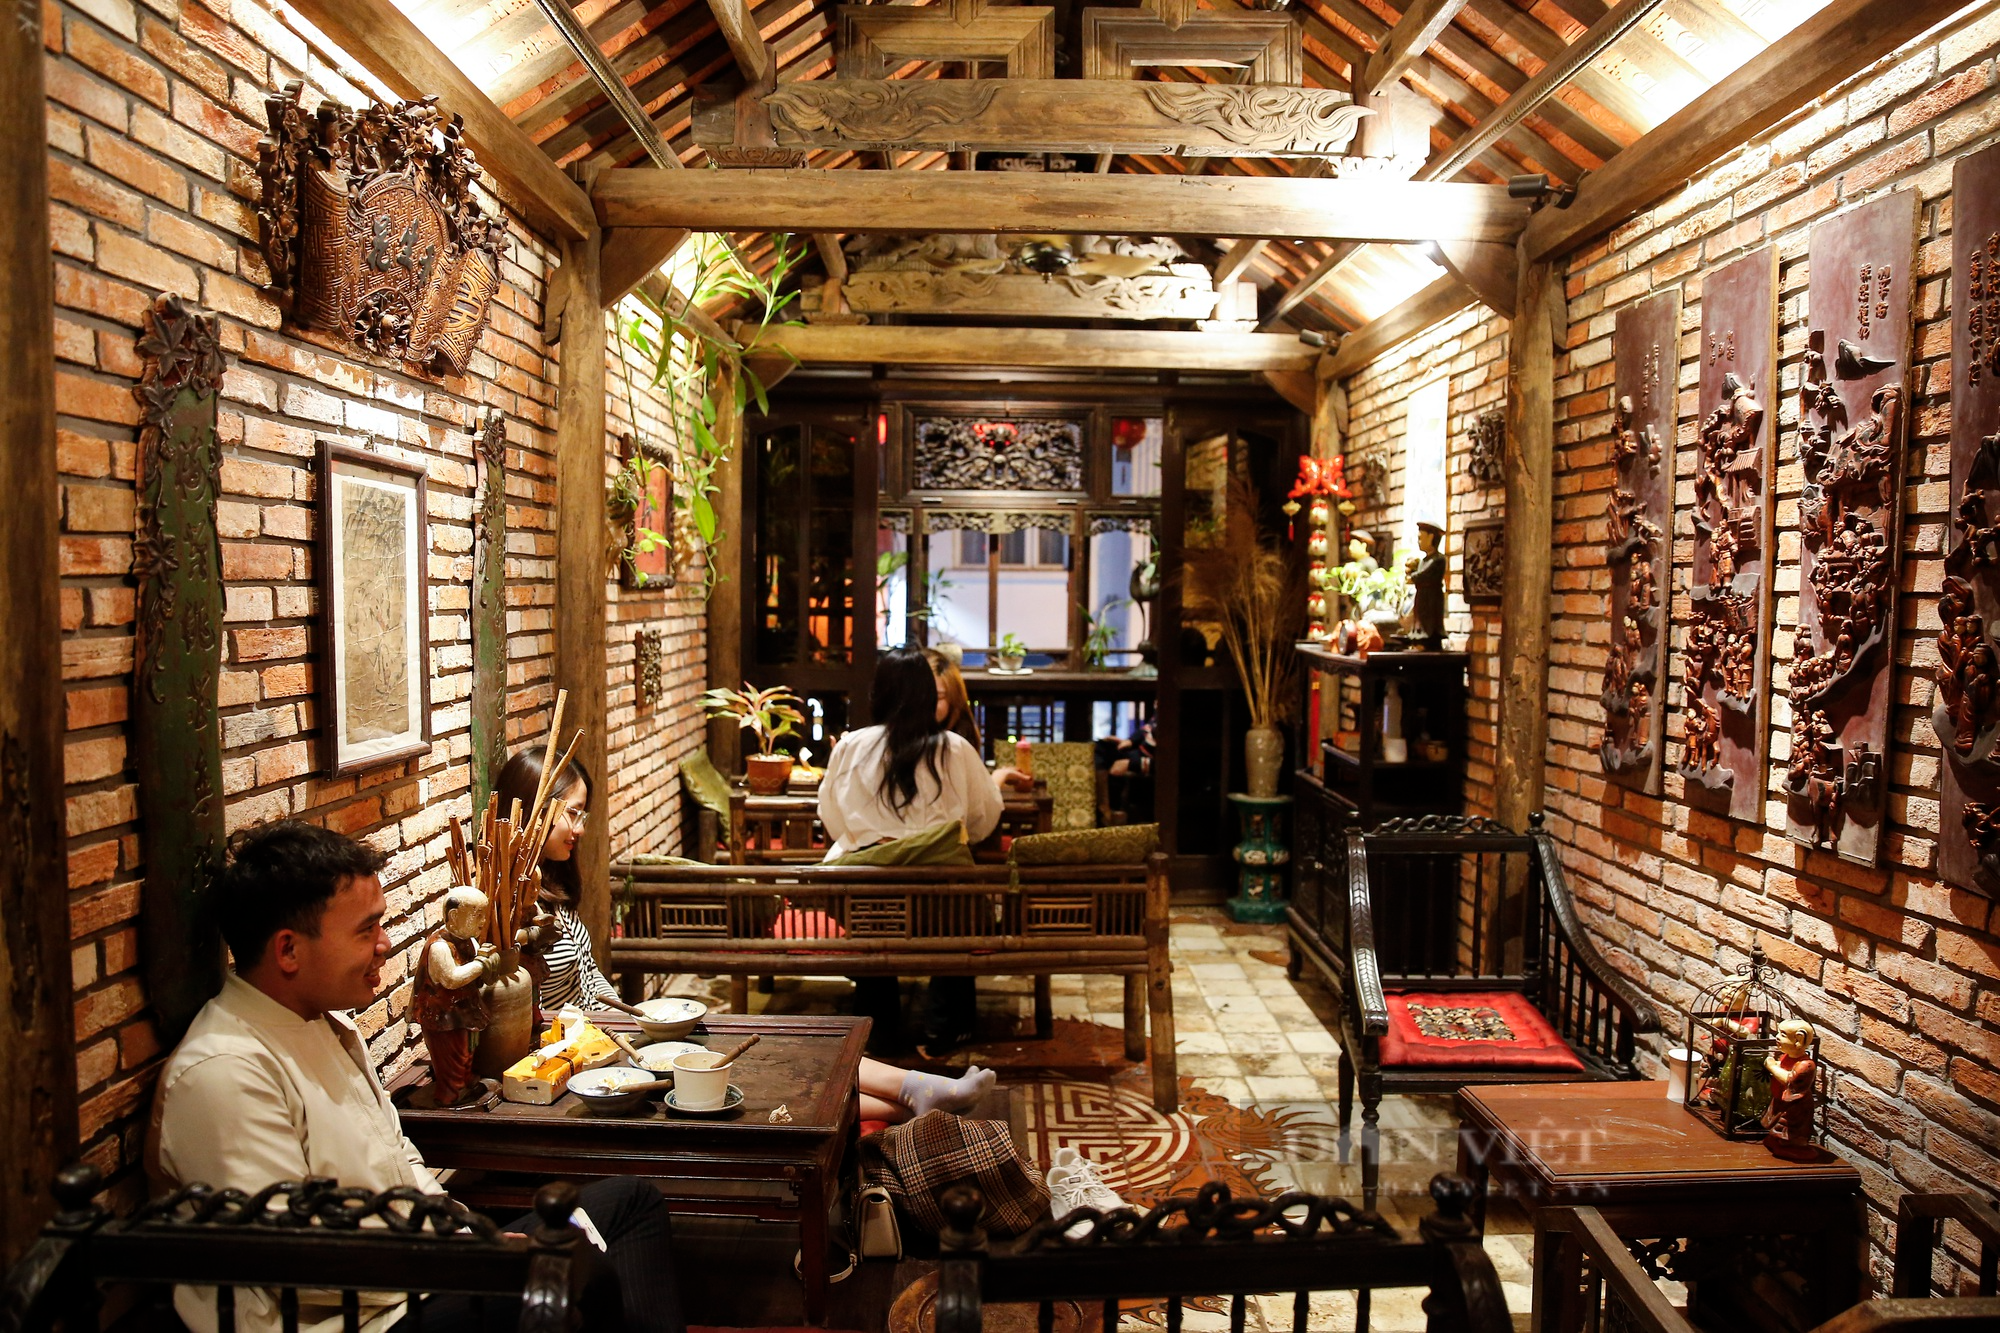 Khám phá quán chè trong căn nhà cổ với không gian hoài niệm Hà Nội đầu thế kỷ 20 - Ảnh 5.